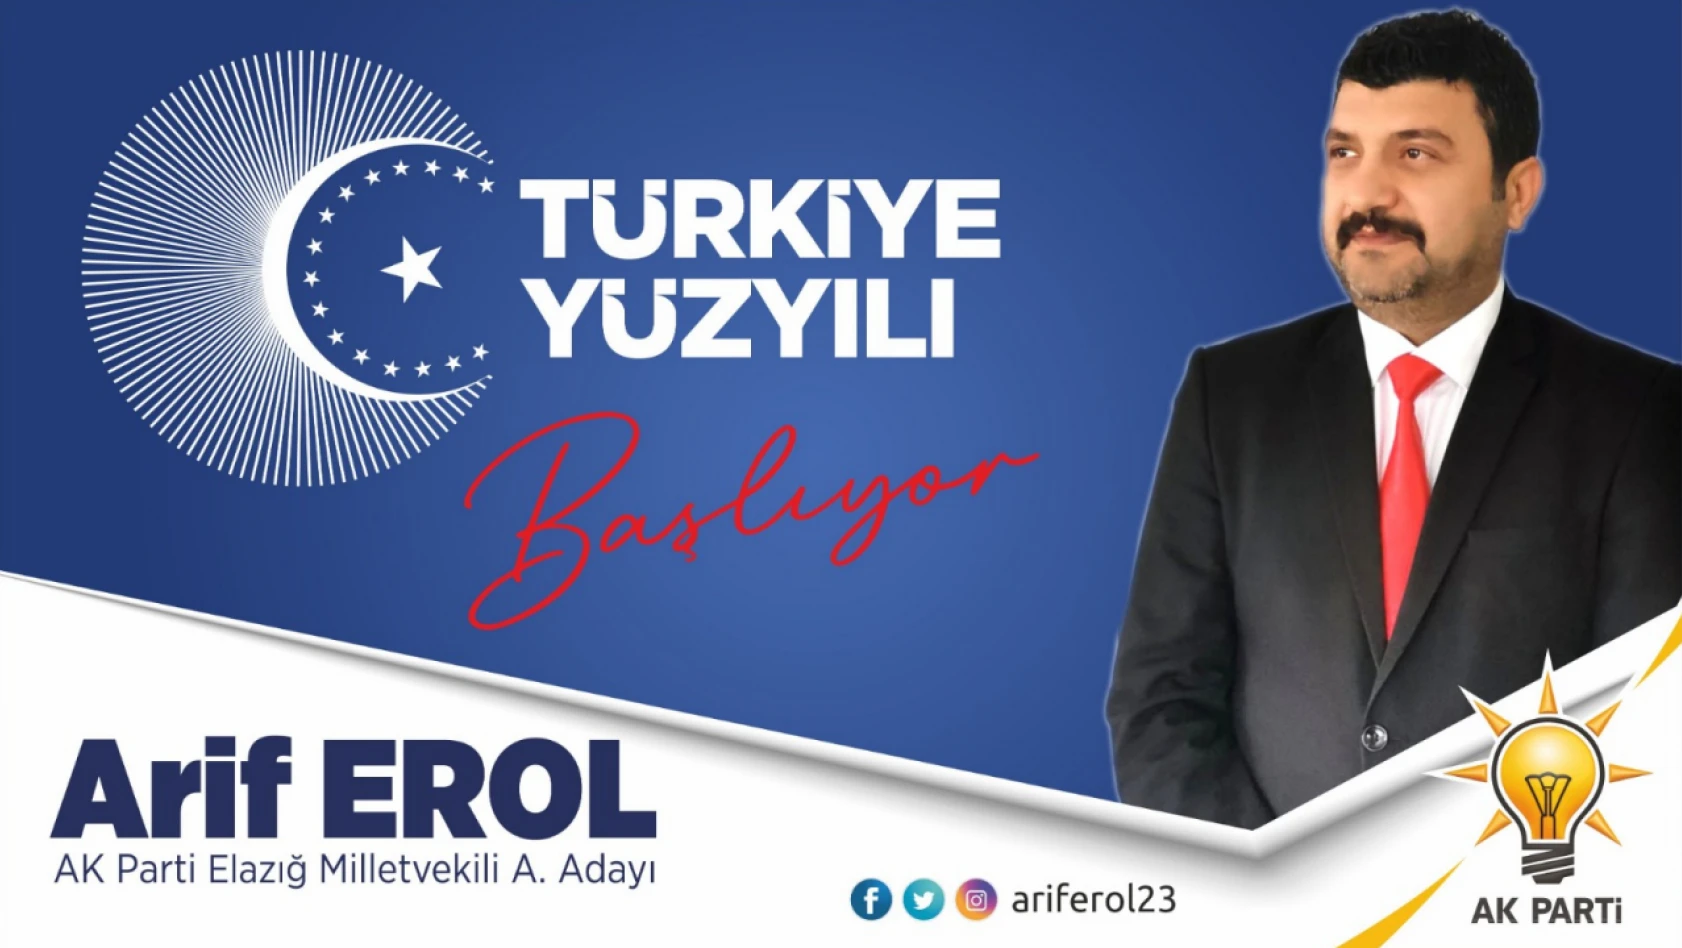 Arif EROL AK Parti  Elazığ Milletvekilliği A. Adaylığını  Açıkladı.